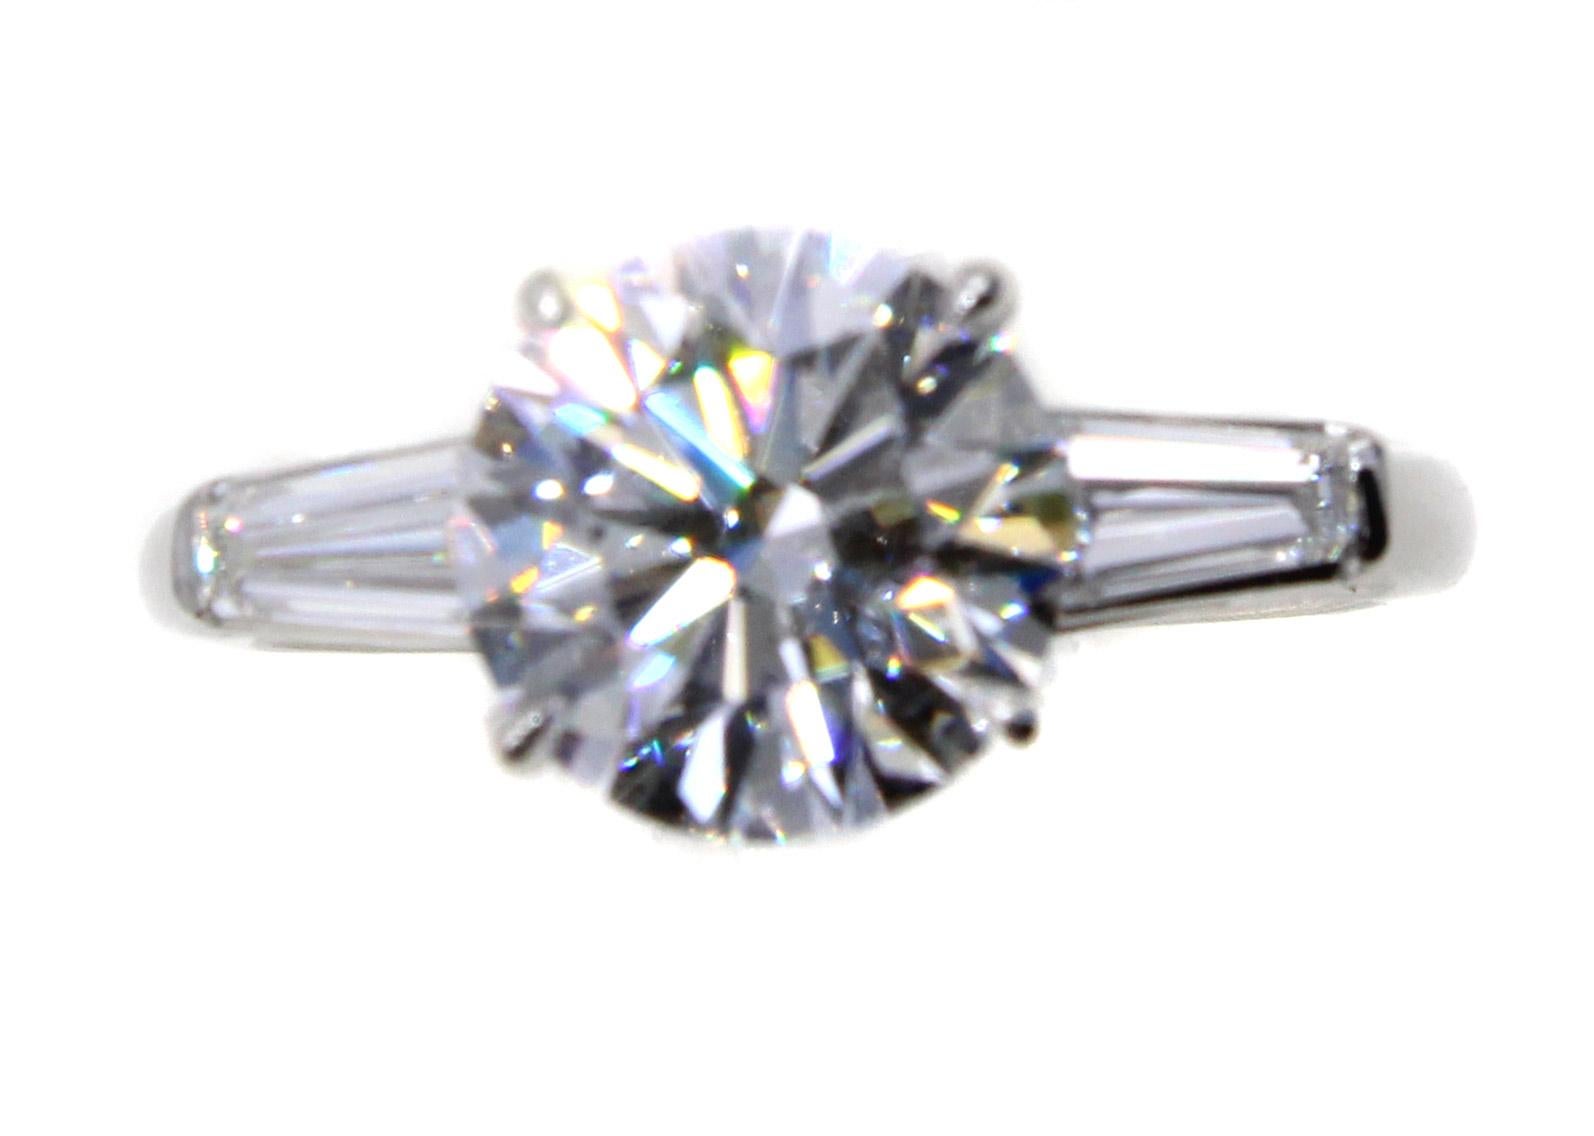 Le diamant parfait, un brillant rond pesant 2,56 carats, de couleur et de clarté D et IF (internally flawless), est serti dans une bague classique en platine faite à la main avec deux baguettes effilées sur le haut des branches. La taille, le